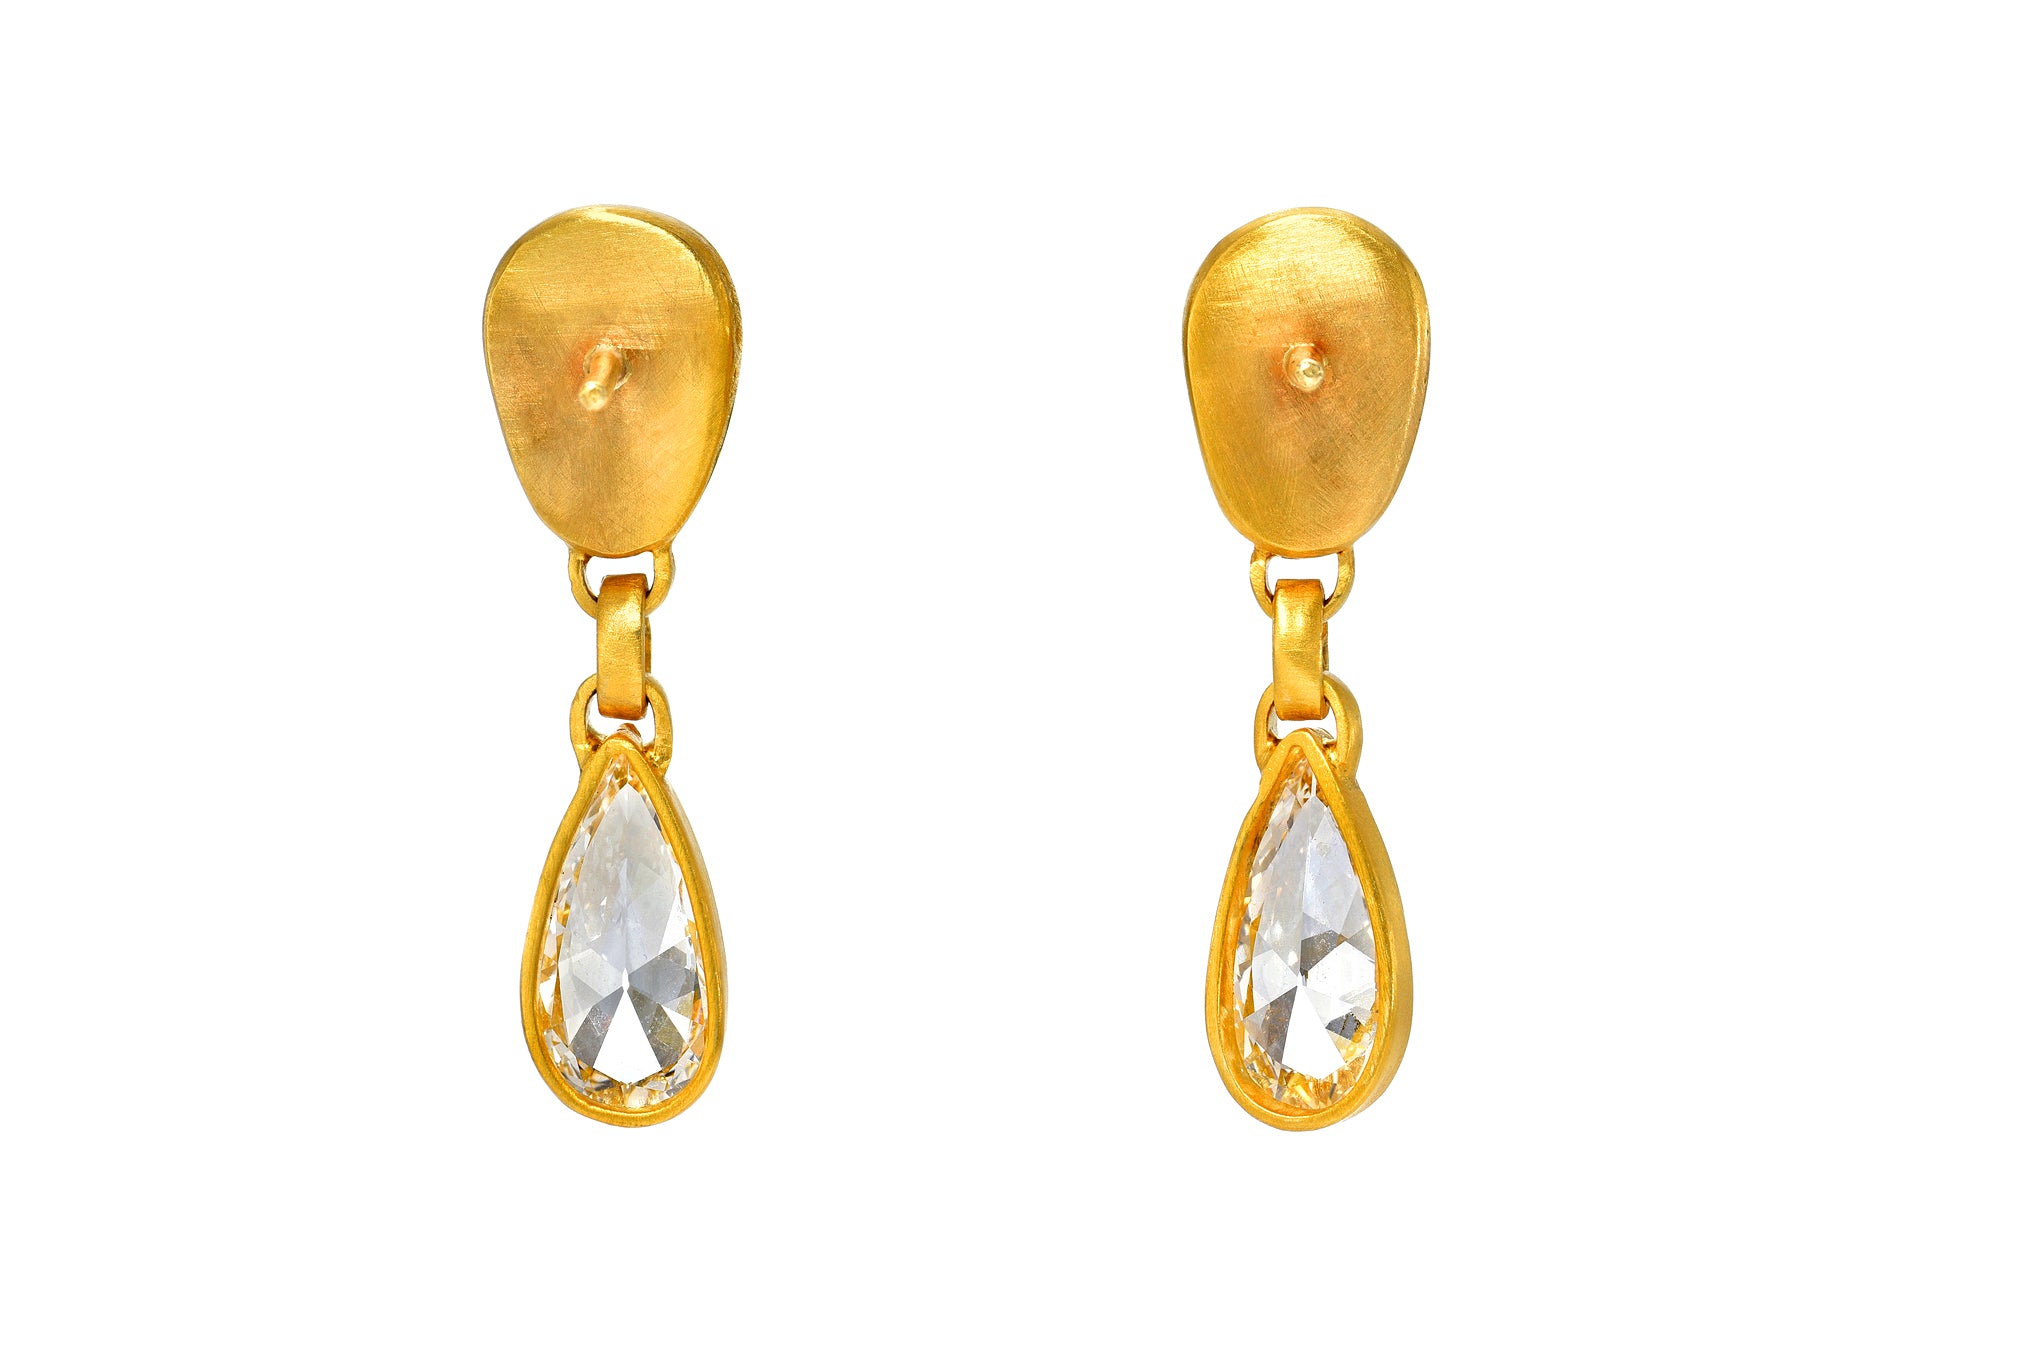 Darius Jewels one of a kind ruby cabochon pear diamond drop gem drop earrings darya Khonsary Arielle Chiara khonsary